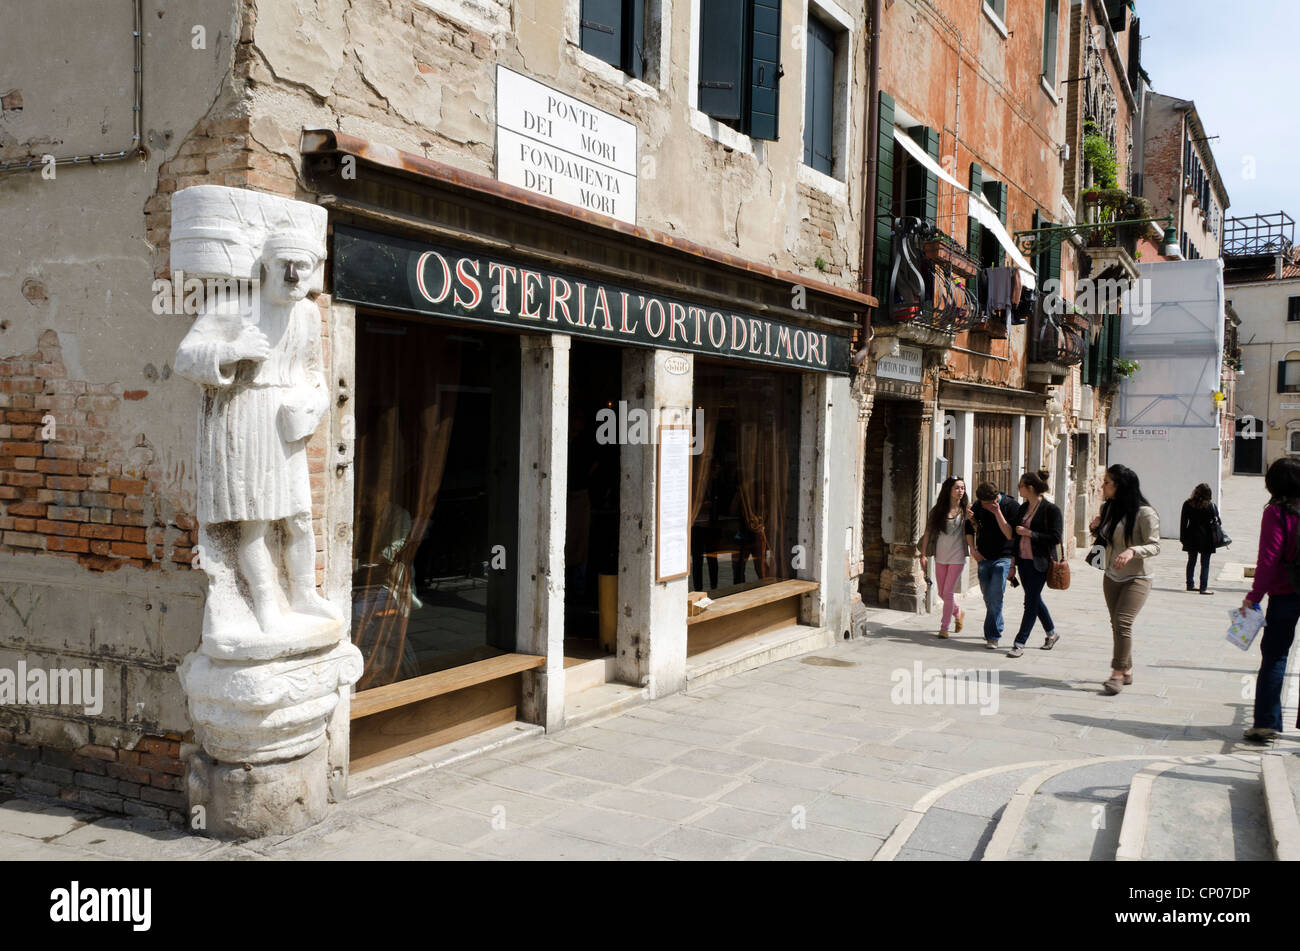 Statue of Sior Antonio Rioba a moorish merchant in the corner of 'Osteria l'orto dei Mori' restaurant in Campo dei Mori - sestiere Cannareggio, Venice - Italy Stock Photo